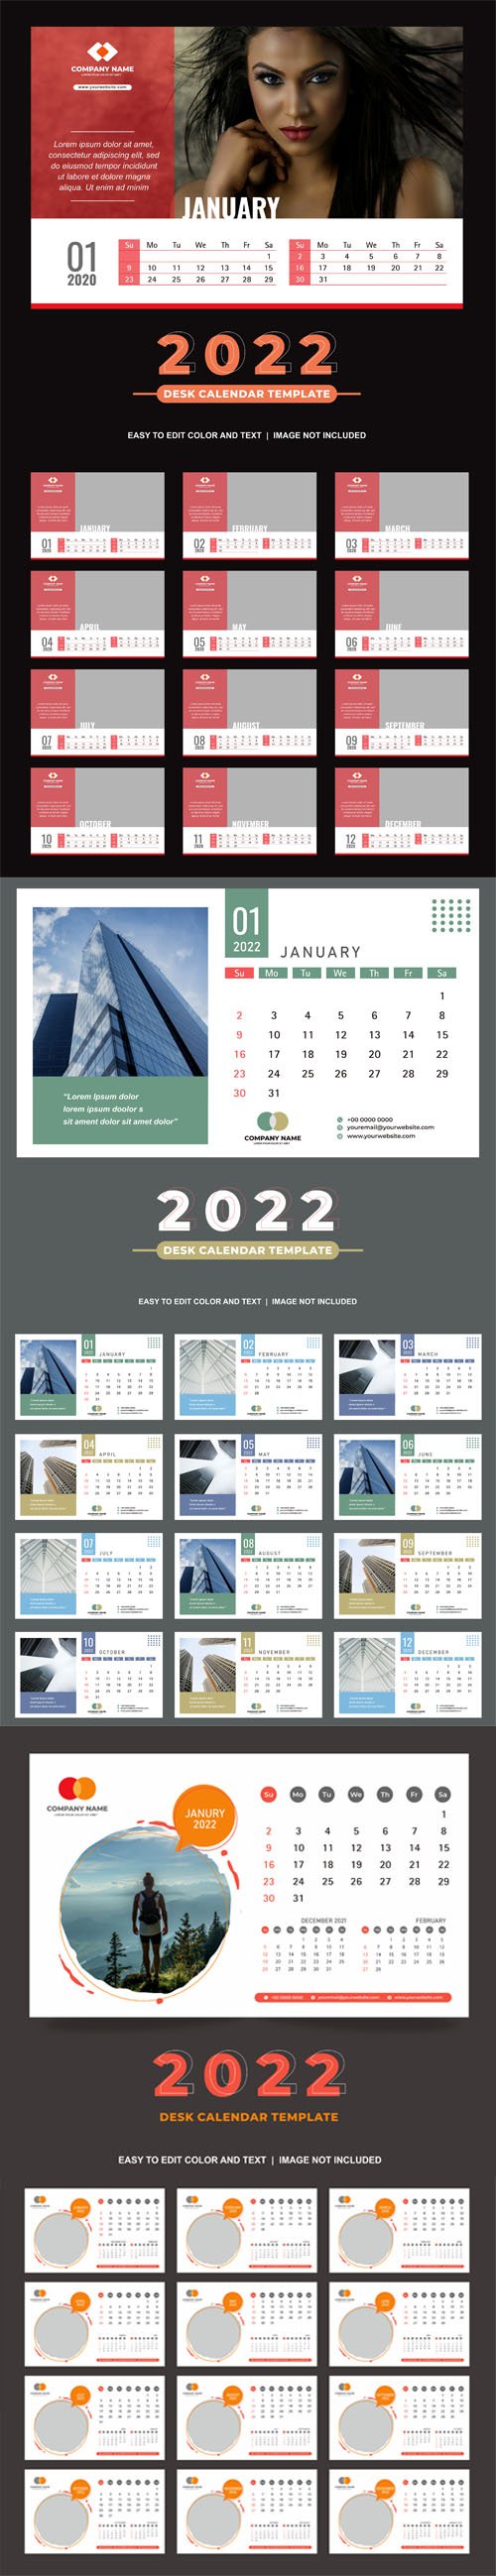 2022 Desk Calendar Vector Templates